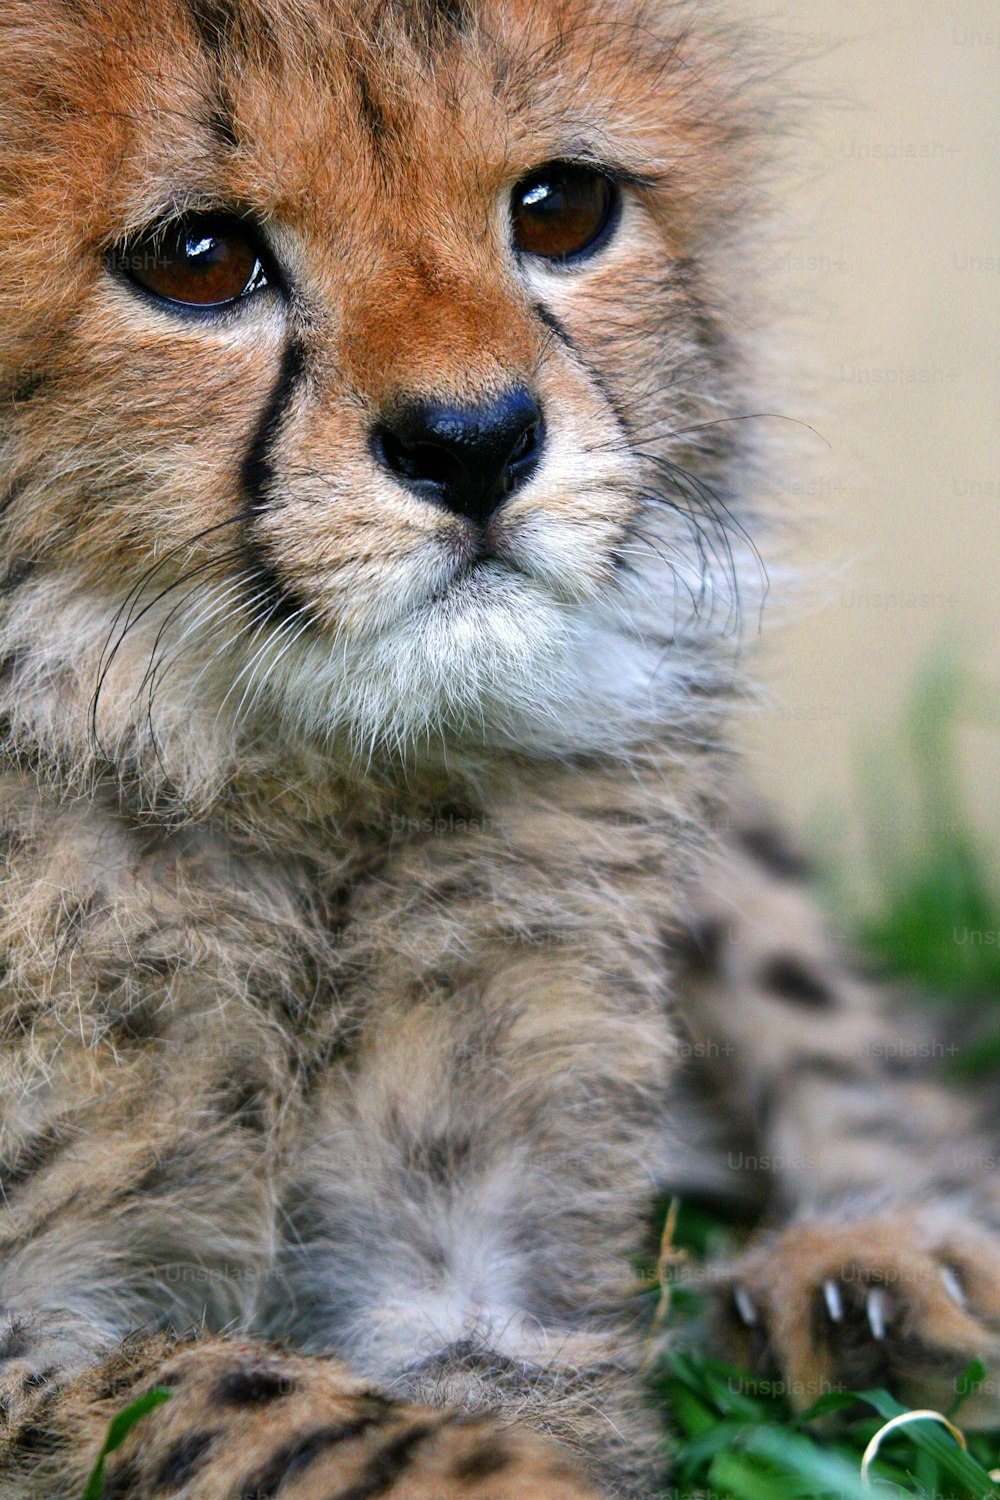 Baby cheetah face